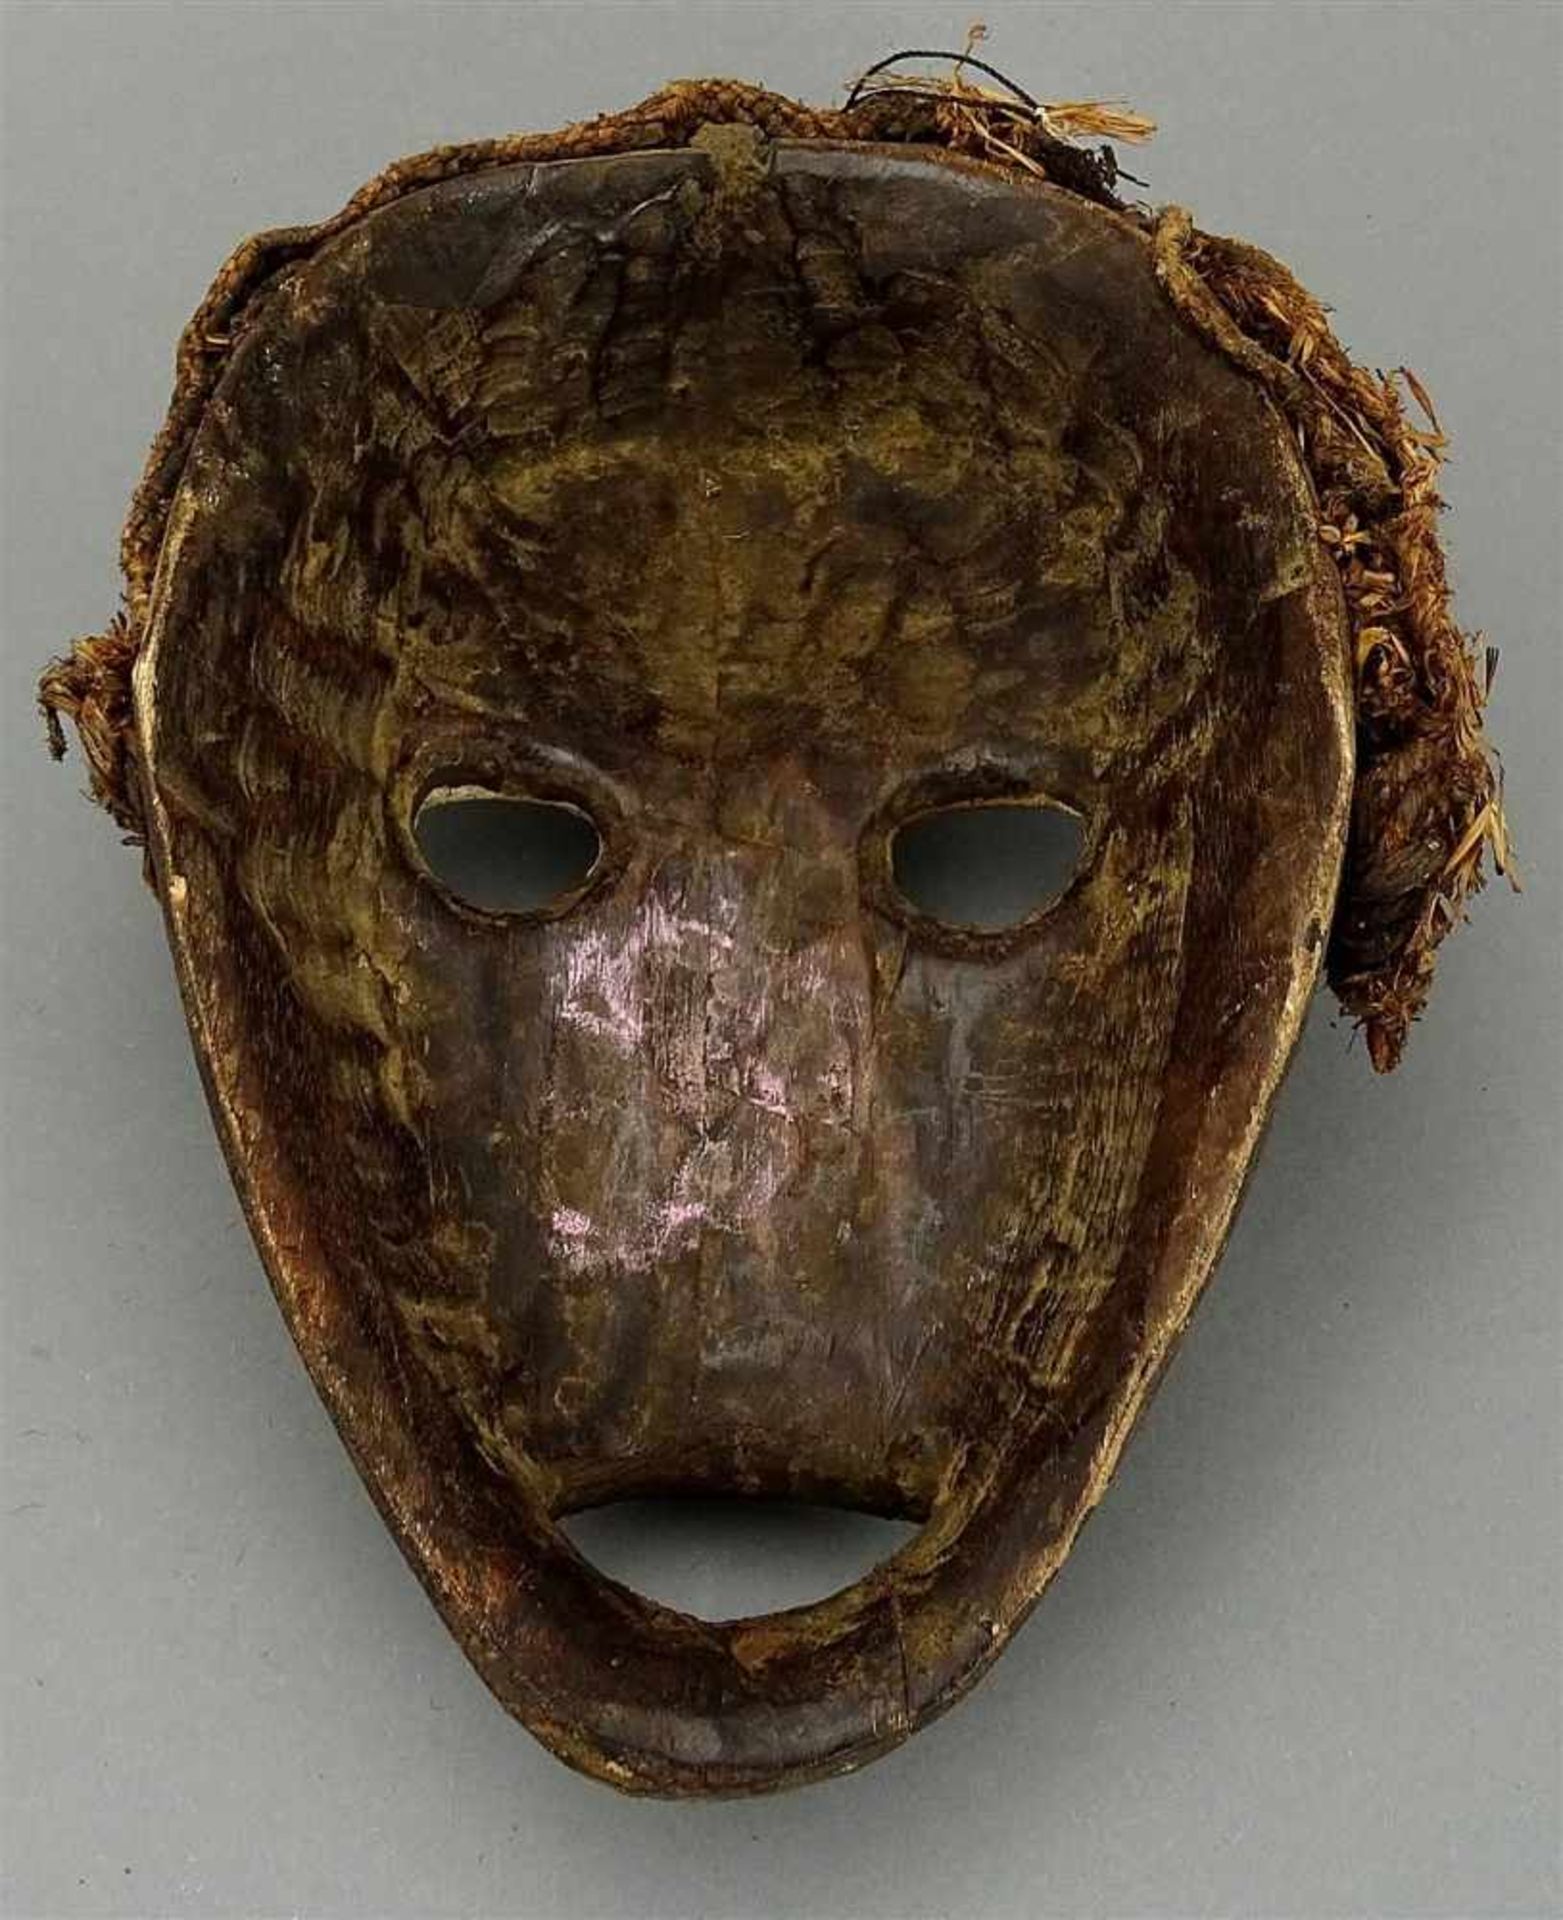 Dan Vorsatzmaske, LiberiaHolz mit Krustenpatina, guter Zustand, H. 25 cm - Image 2 of 2